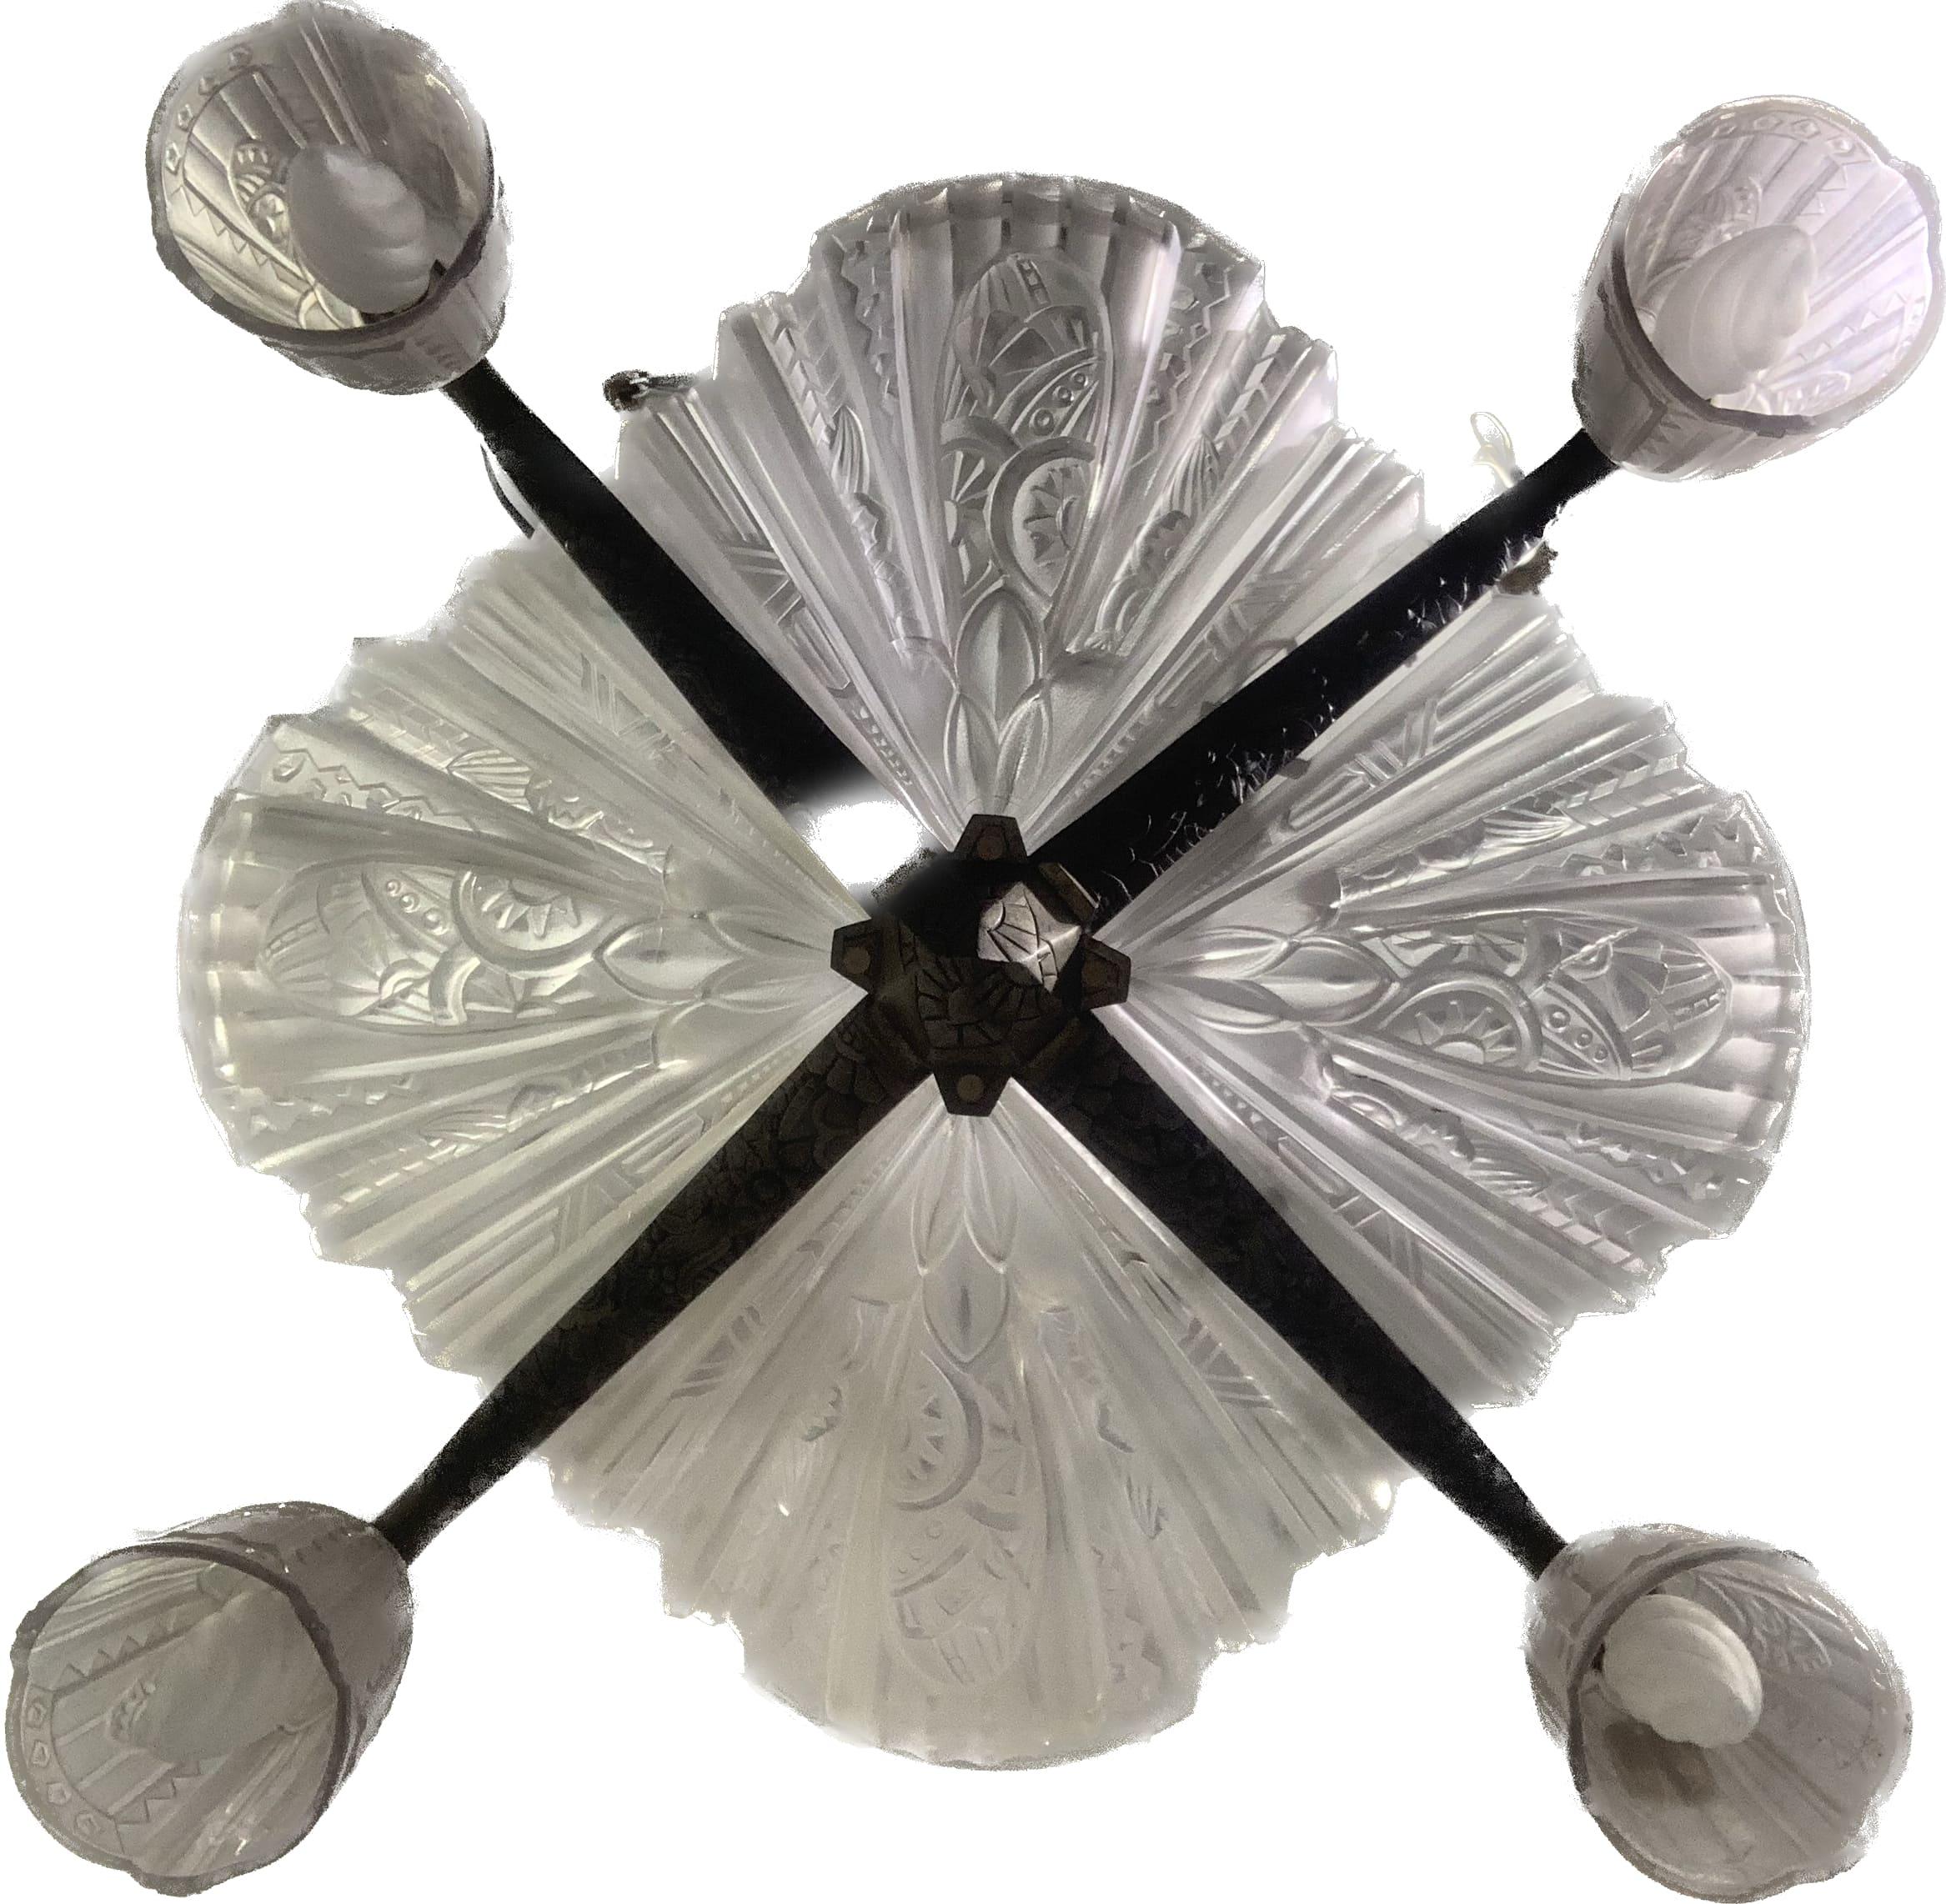 Kronleuchter aus dem frühen 20. Jahrhundert (um 1930) aus Frankreich. Die Struktur aus paginiertem Messing besteht aus vier Leuchtern und vier Tulpen, die typische geometrische Formen des Art déco darstellen, die von der Natur und der Flora